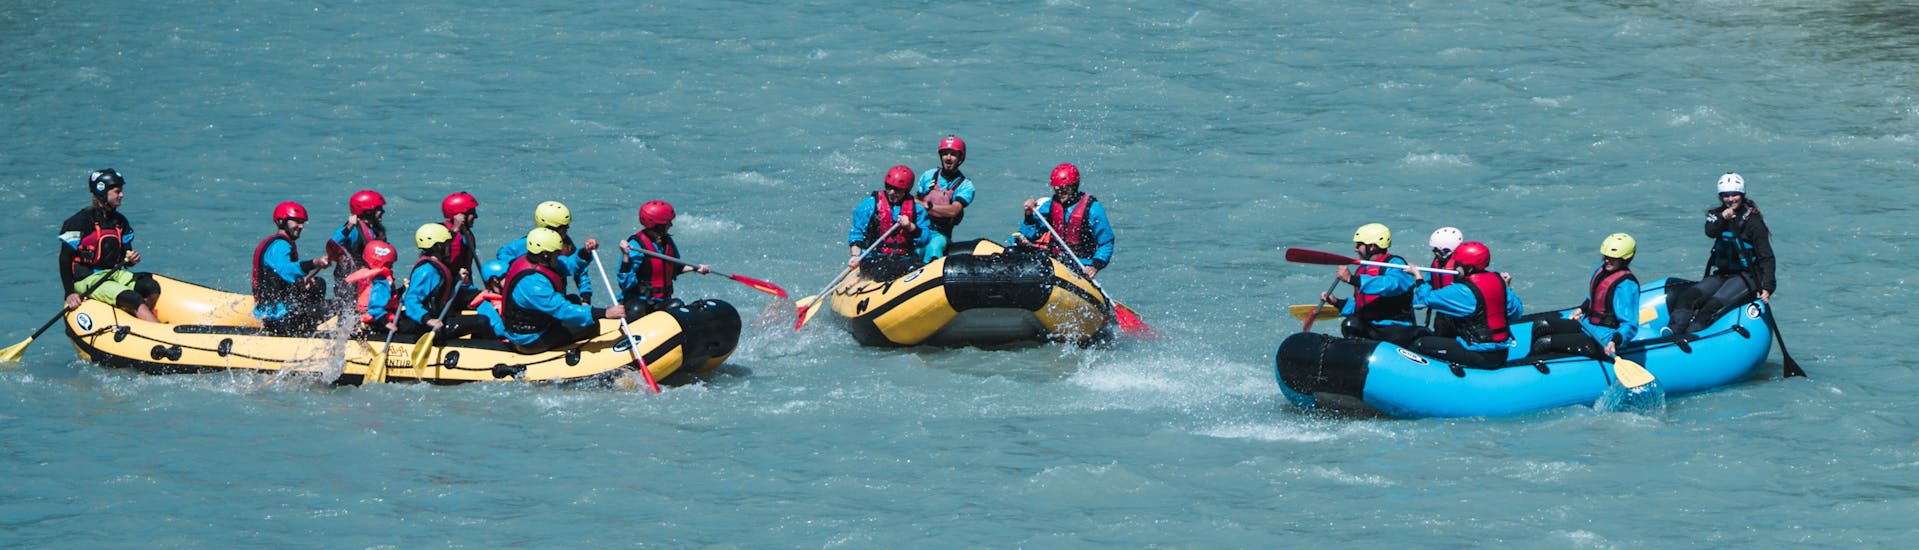 Tutti danno il meglio durante il Rafting sull'Adige in Val Venosta - Homerun Tour con Adventure Südtirol.